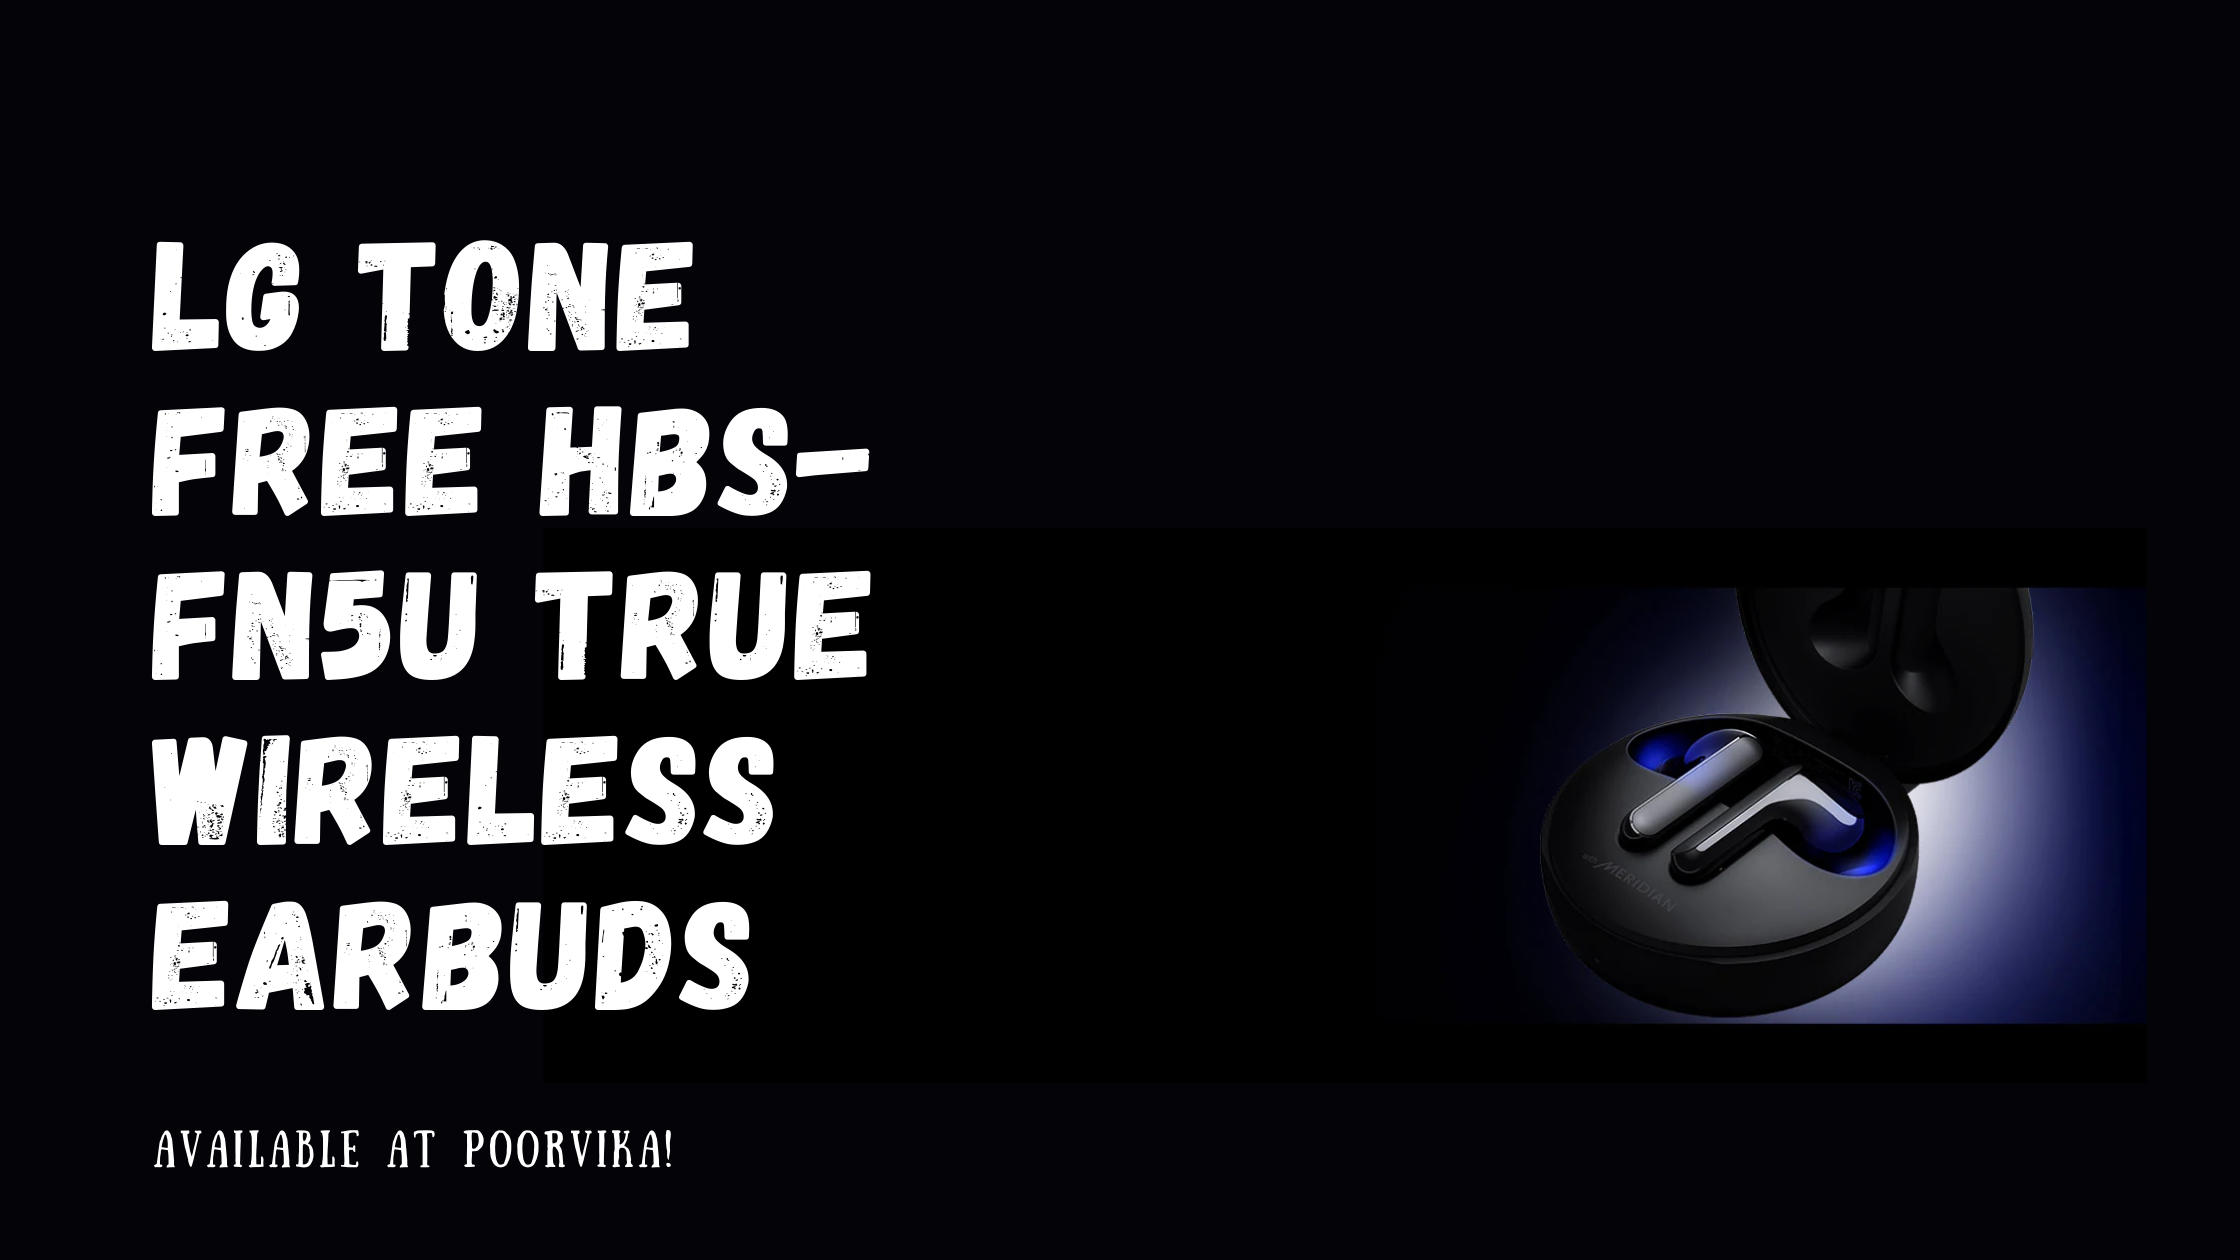 LG TONE Free HBS-FN5U True Wireless